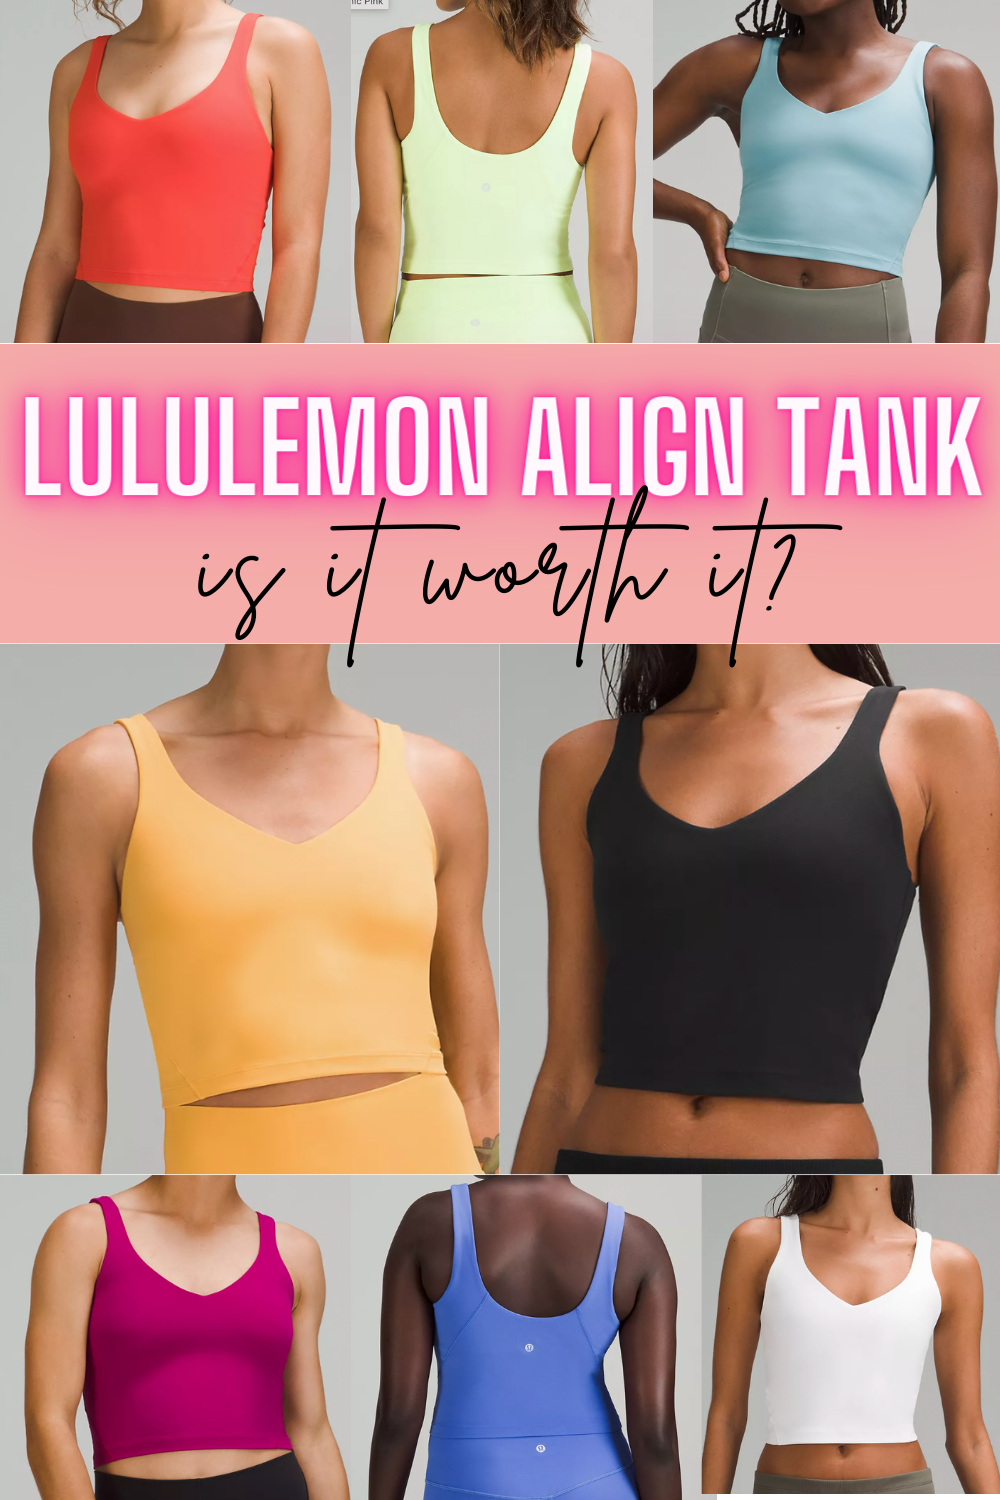 Is the Lululemon Align Tank worth it?